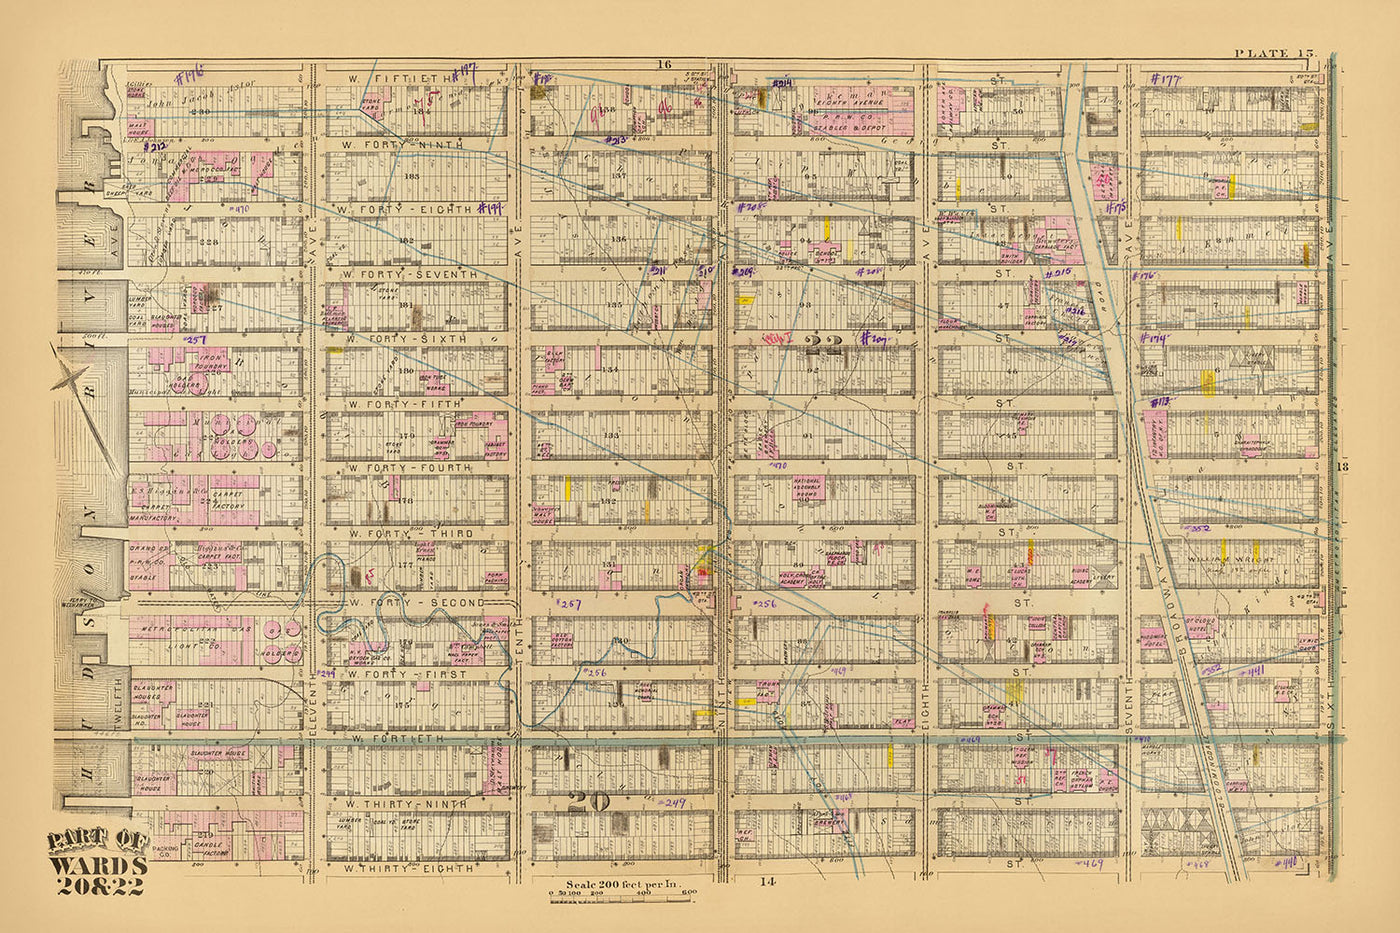 Mapa antiguo del distrito de los teatros, Nueva York, 1879: Times Square, ferry a Weehawken, estación de la calle 42, calle 38-50 oeste, Broadway